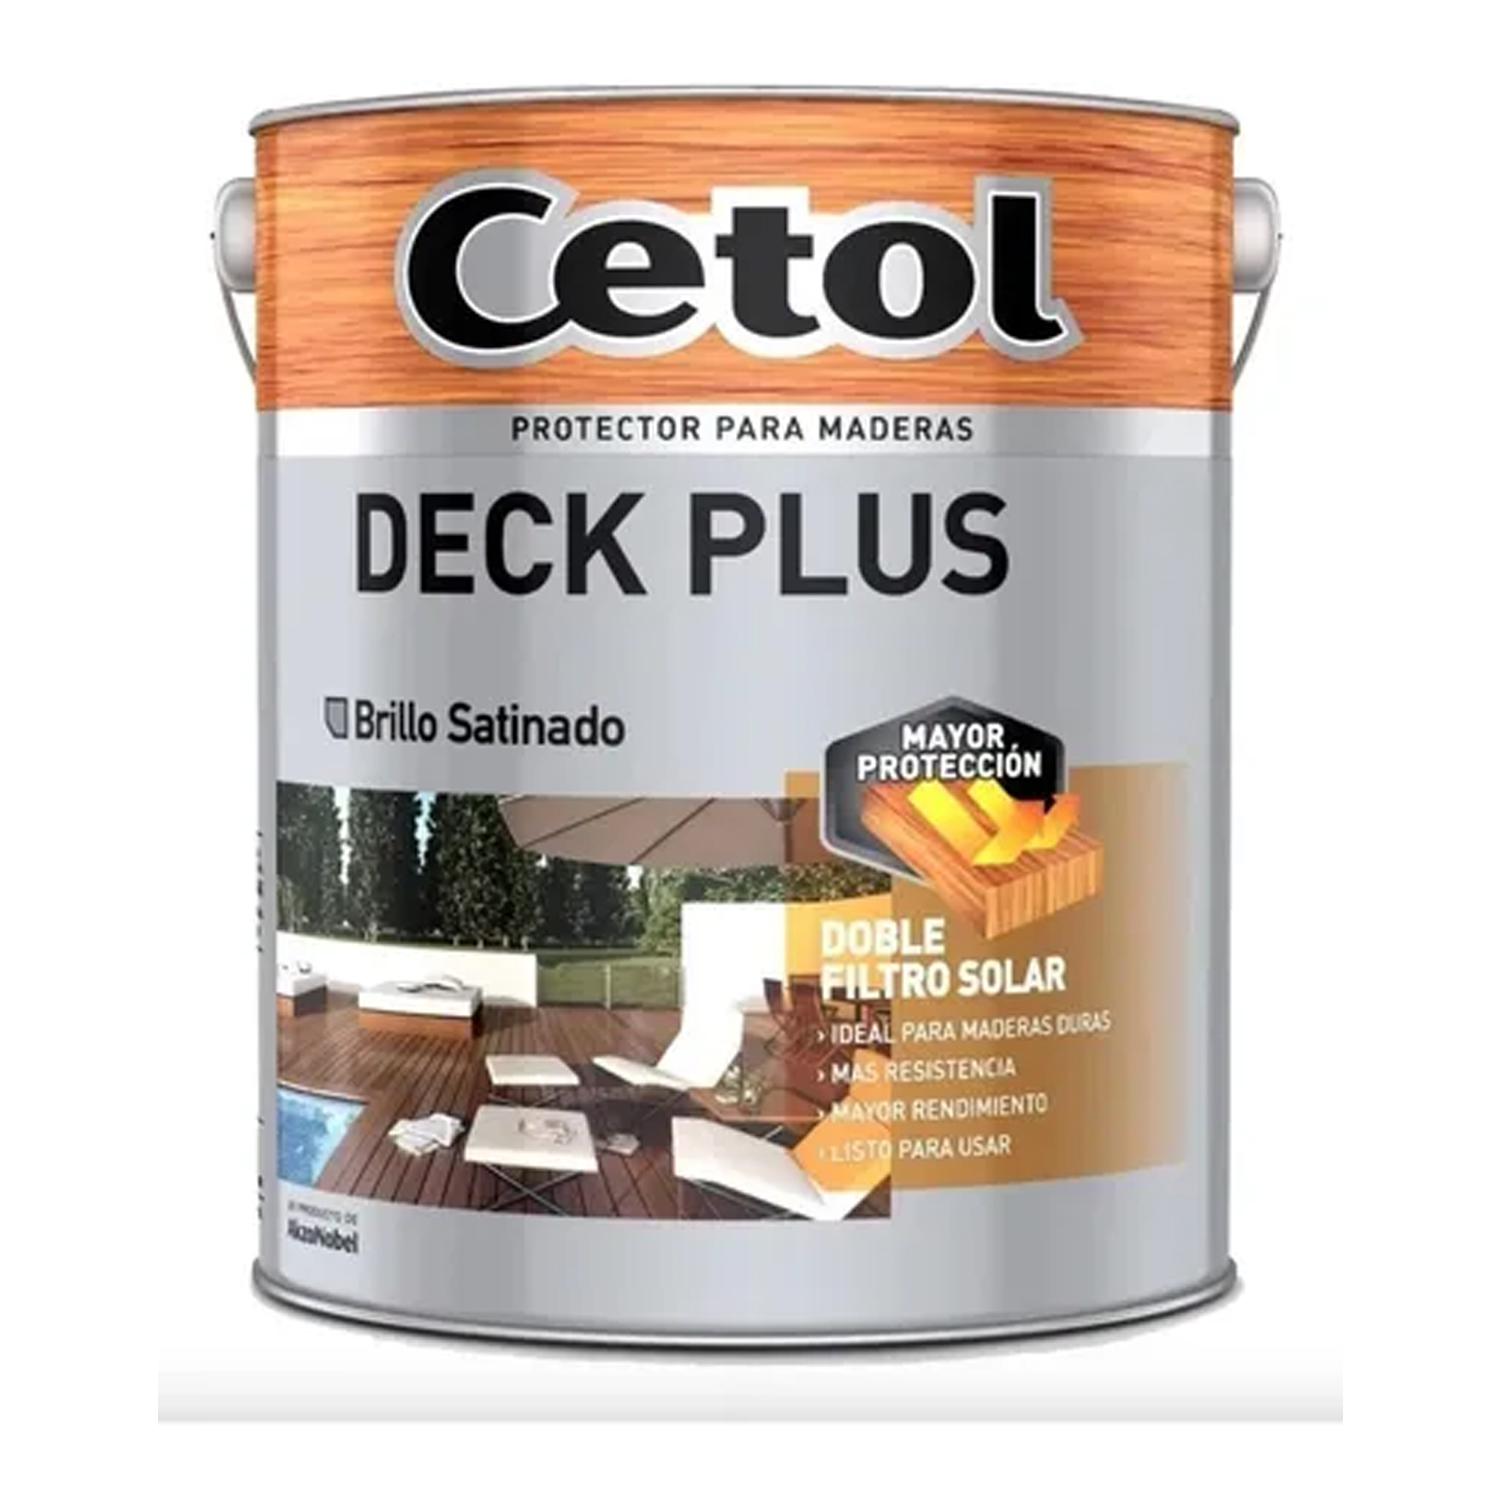 Cetol Deck Plus Teca 1 lts